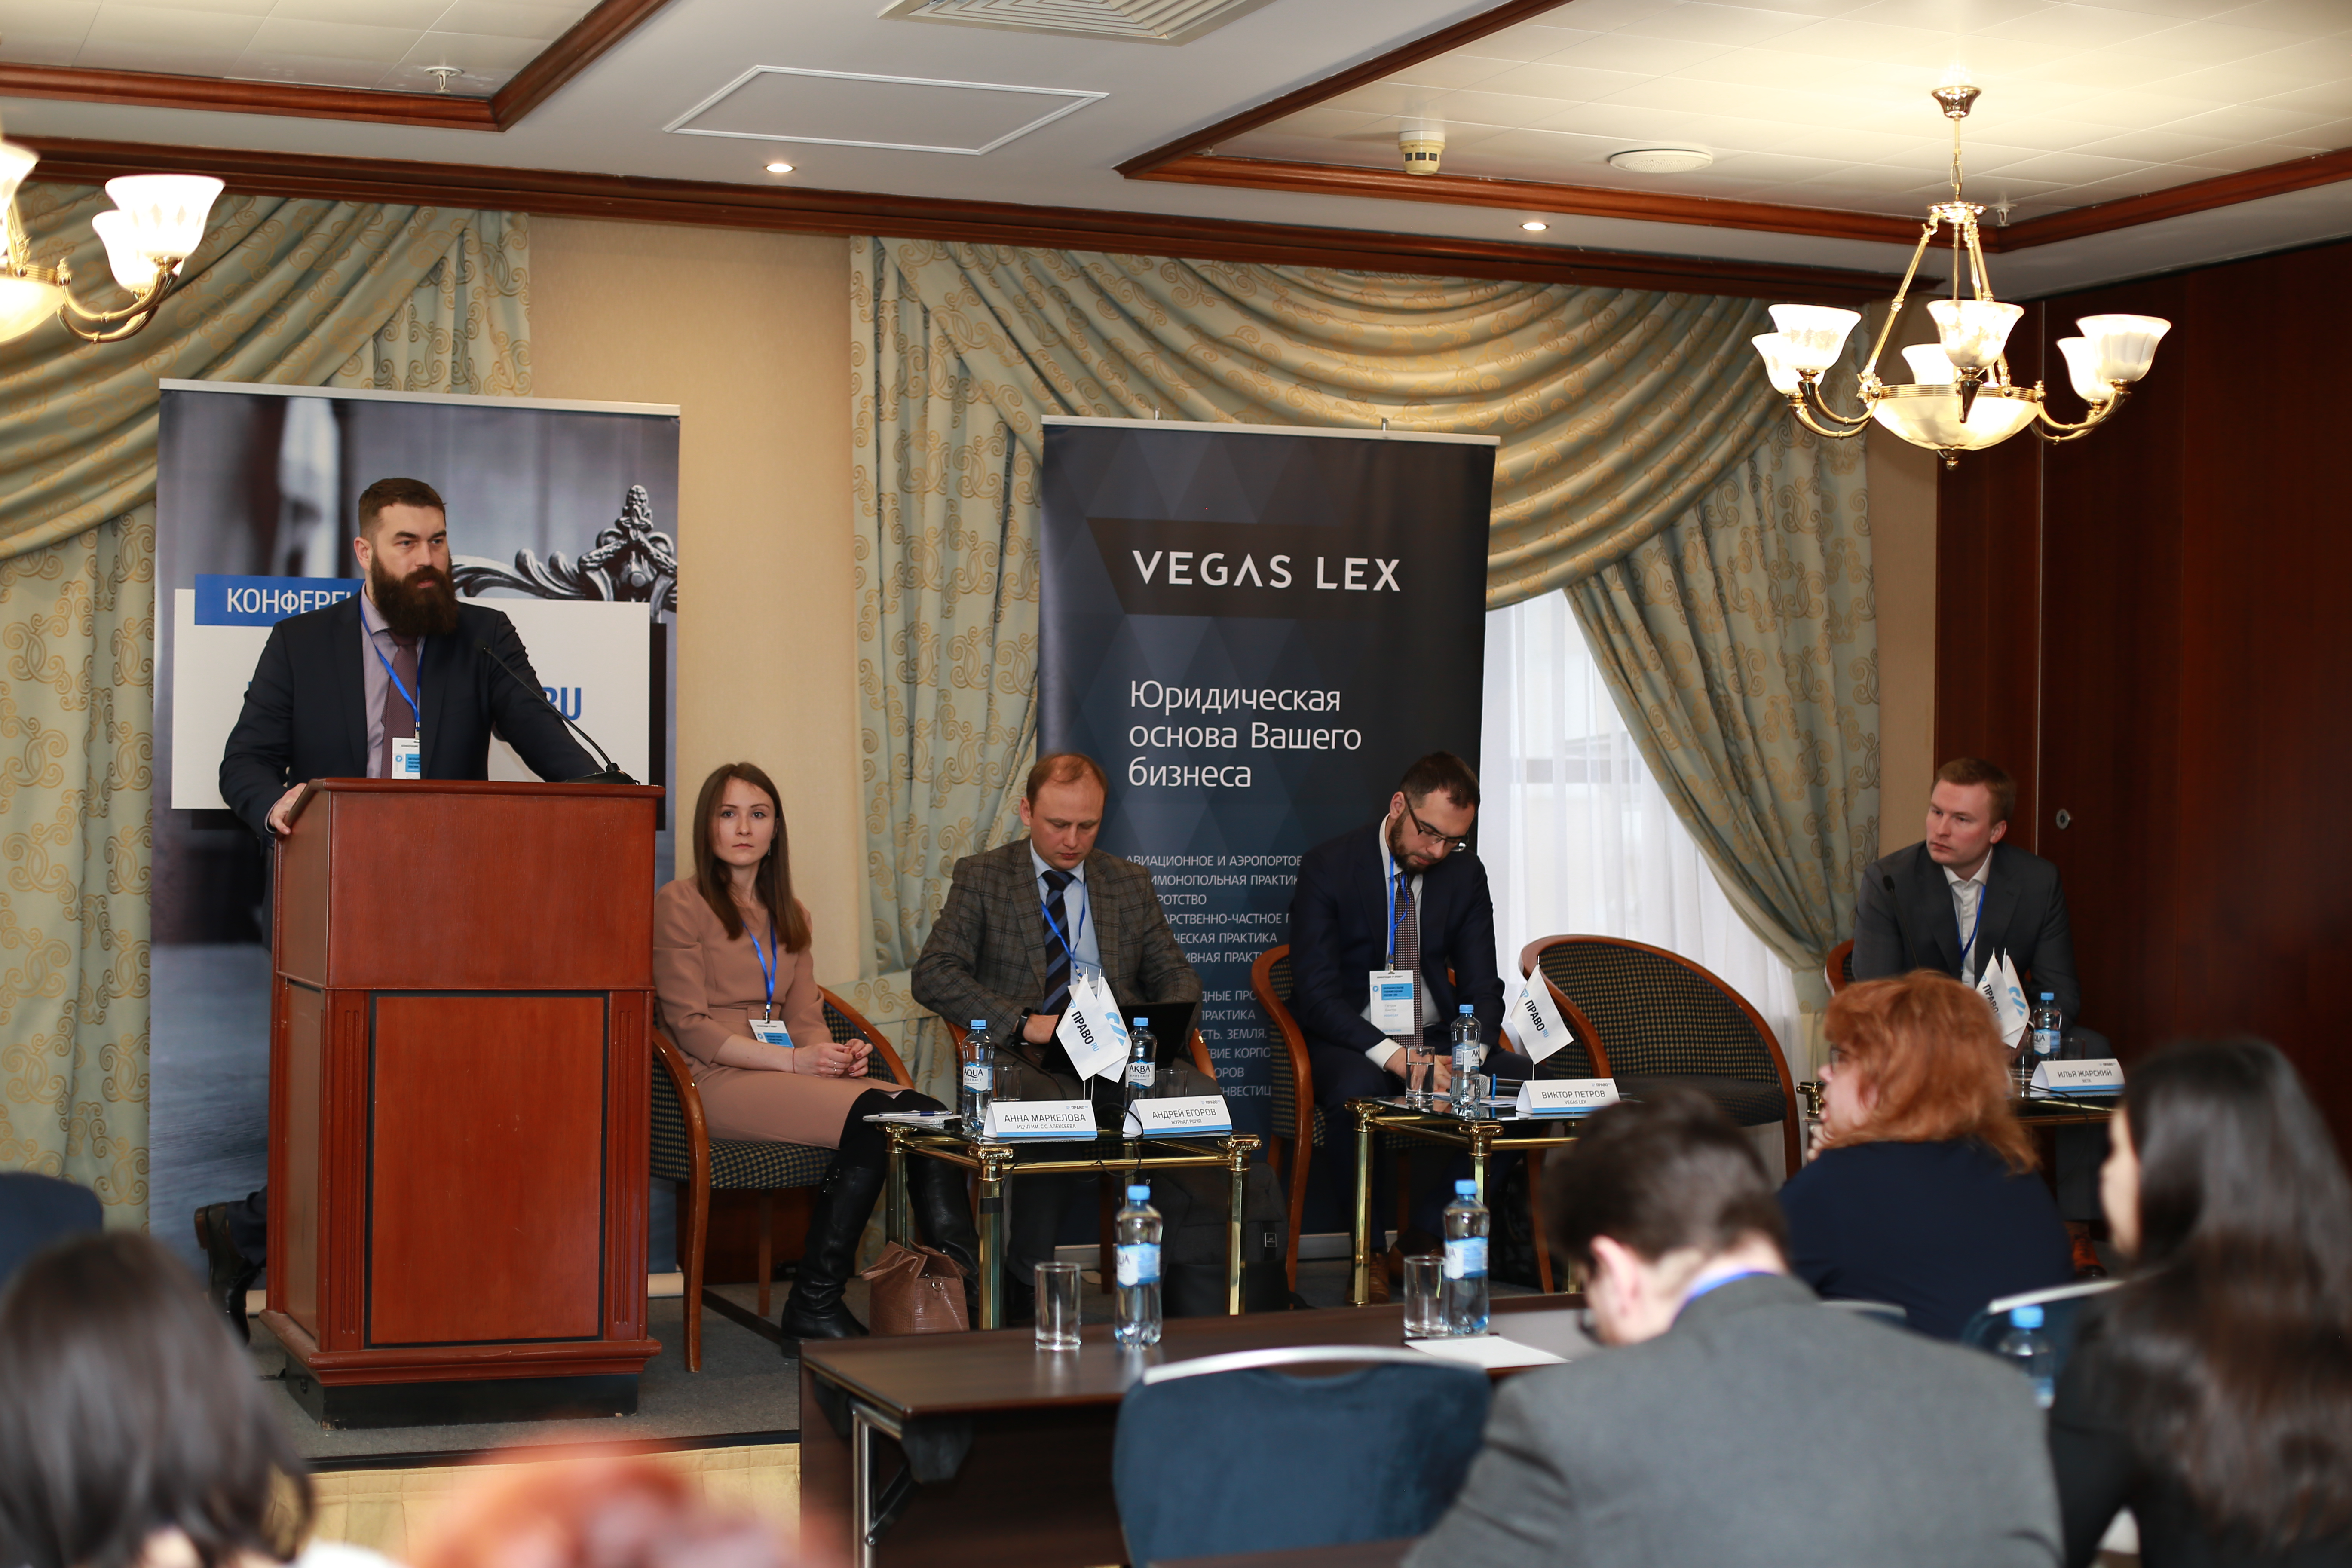 Максим Григорьев, адвокат, партнер, руководитель специальных проектов VEGAS LEX